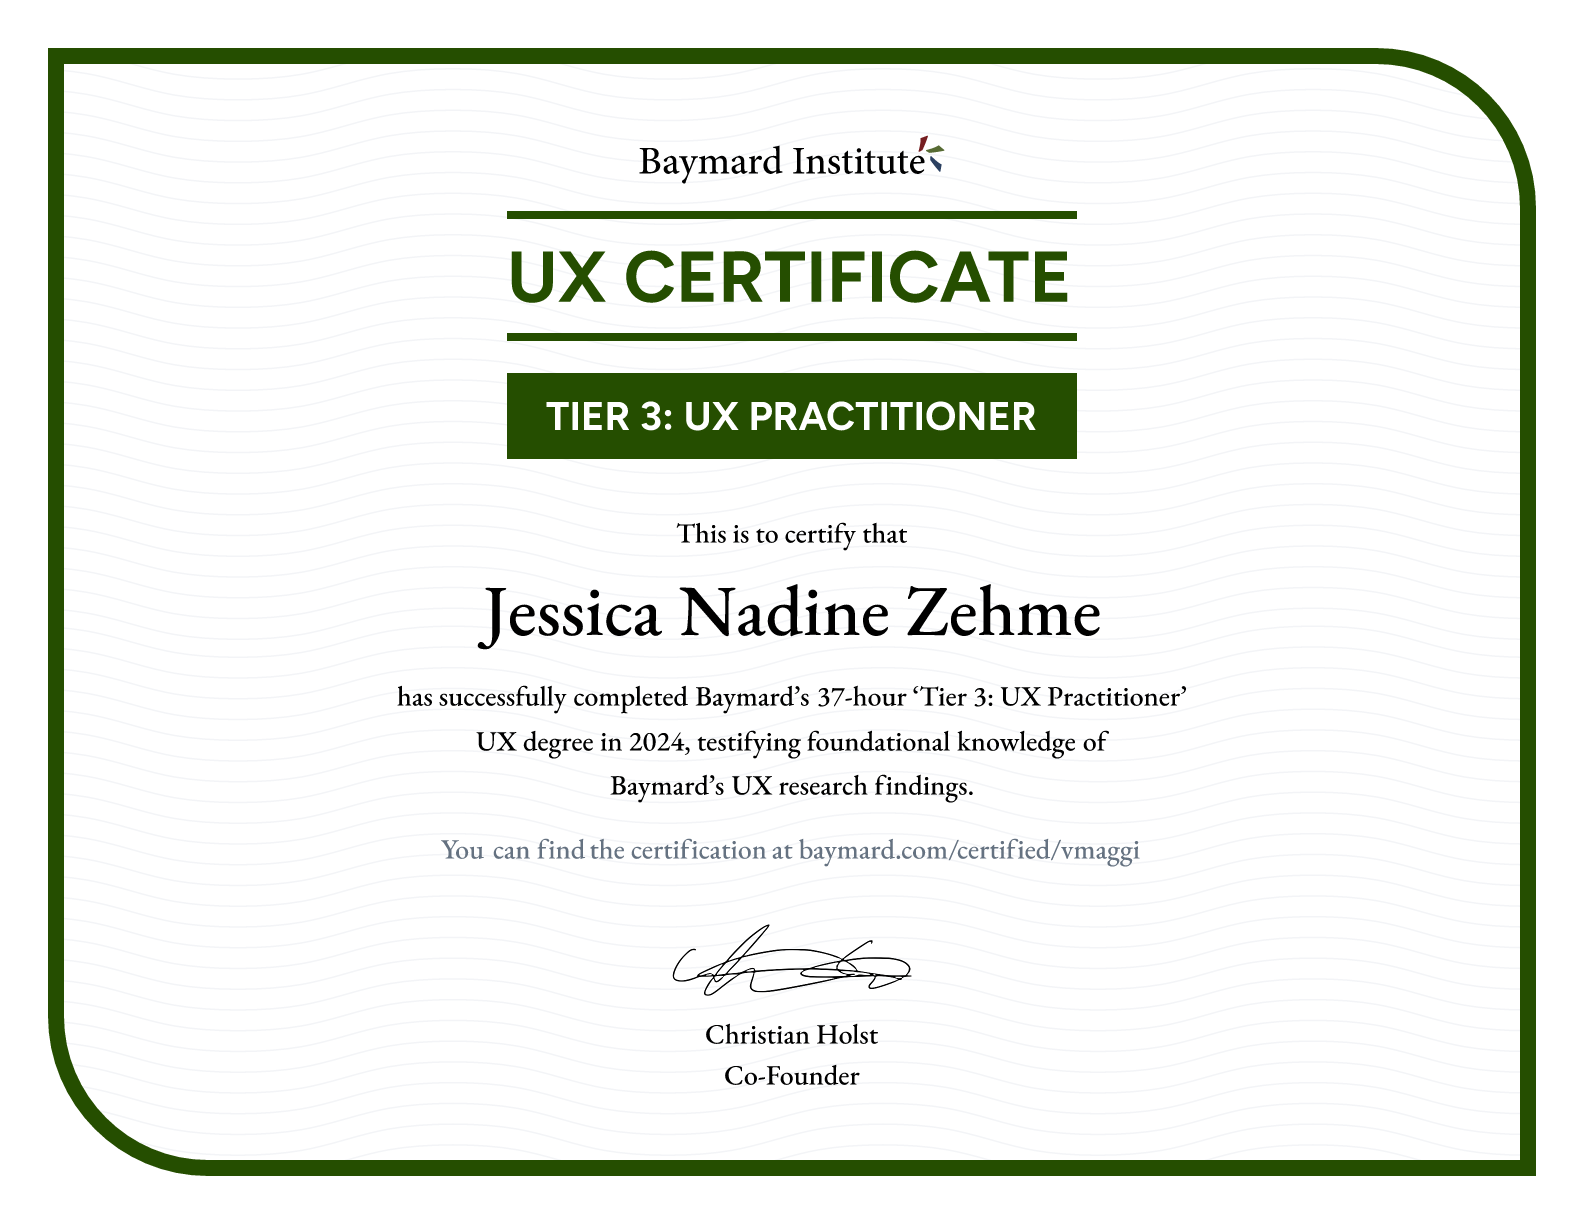 Jessica Nadine Zehme’s certificate